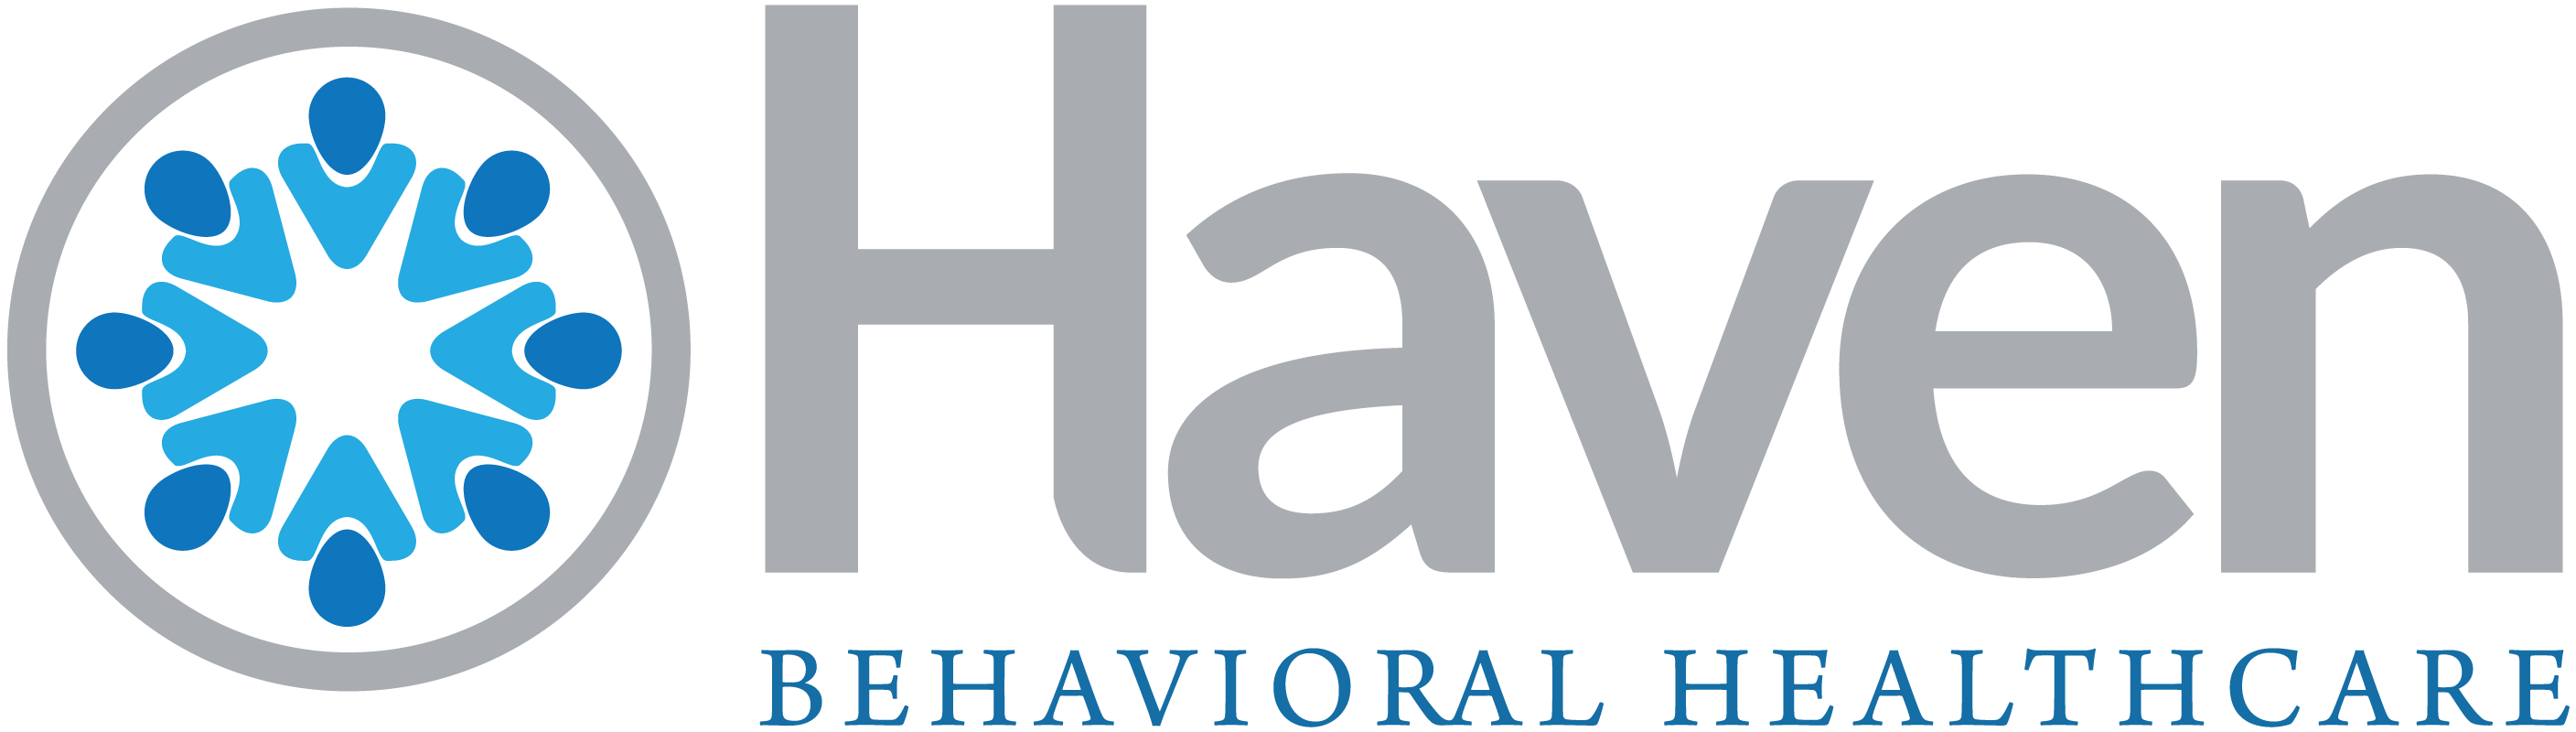 Behavioral Logo - Haven Behavioral Healthcare